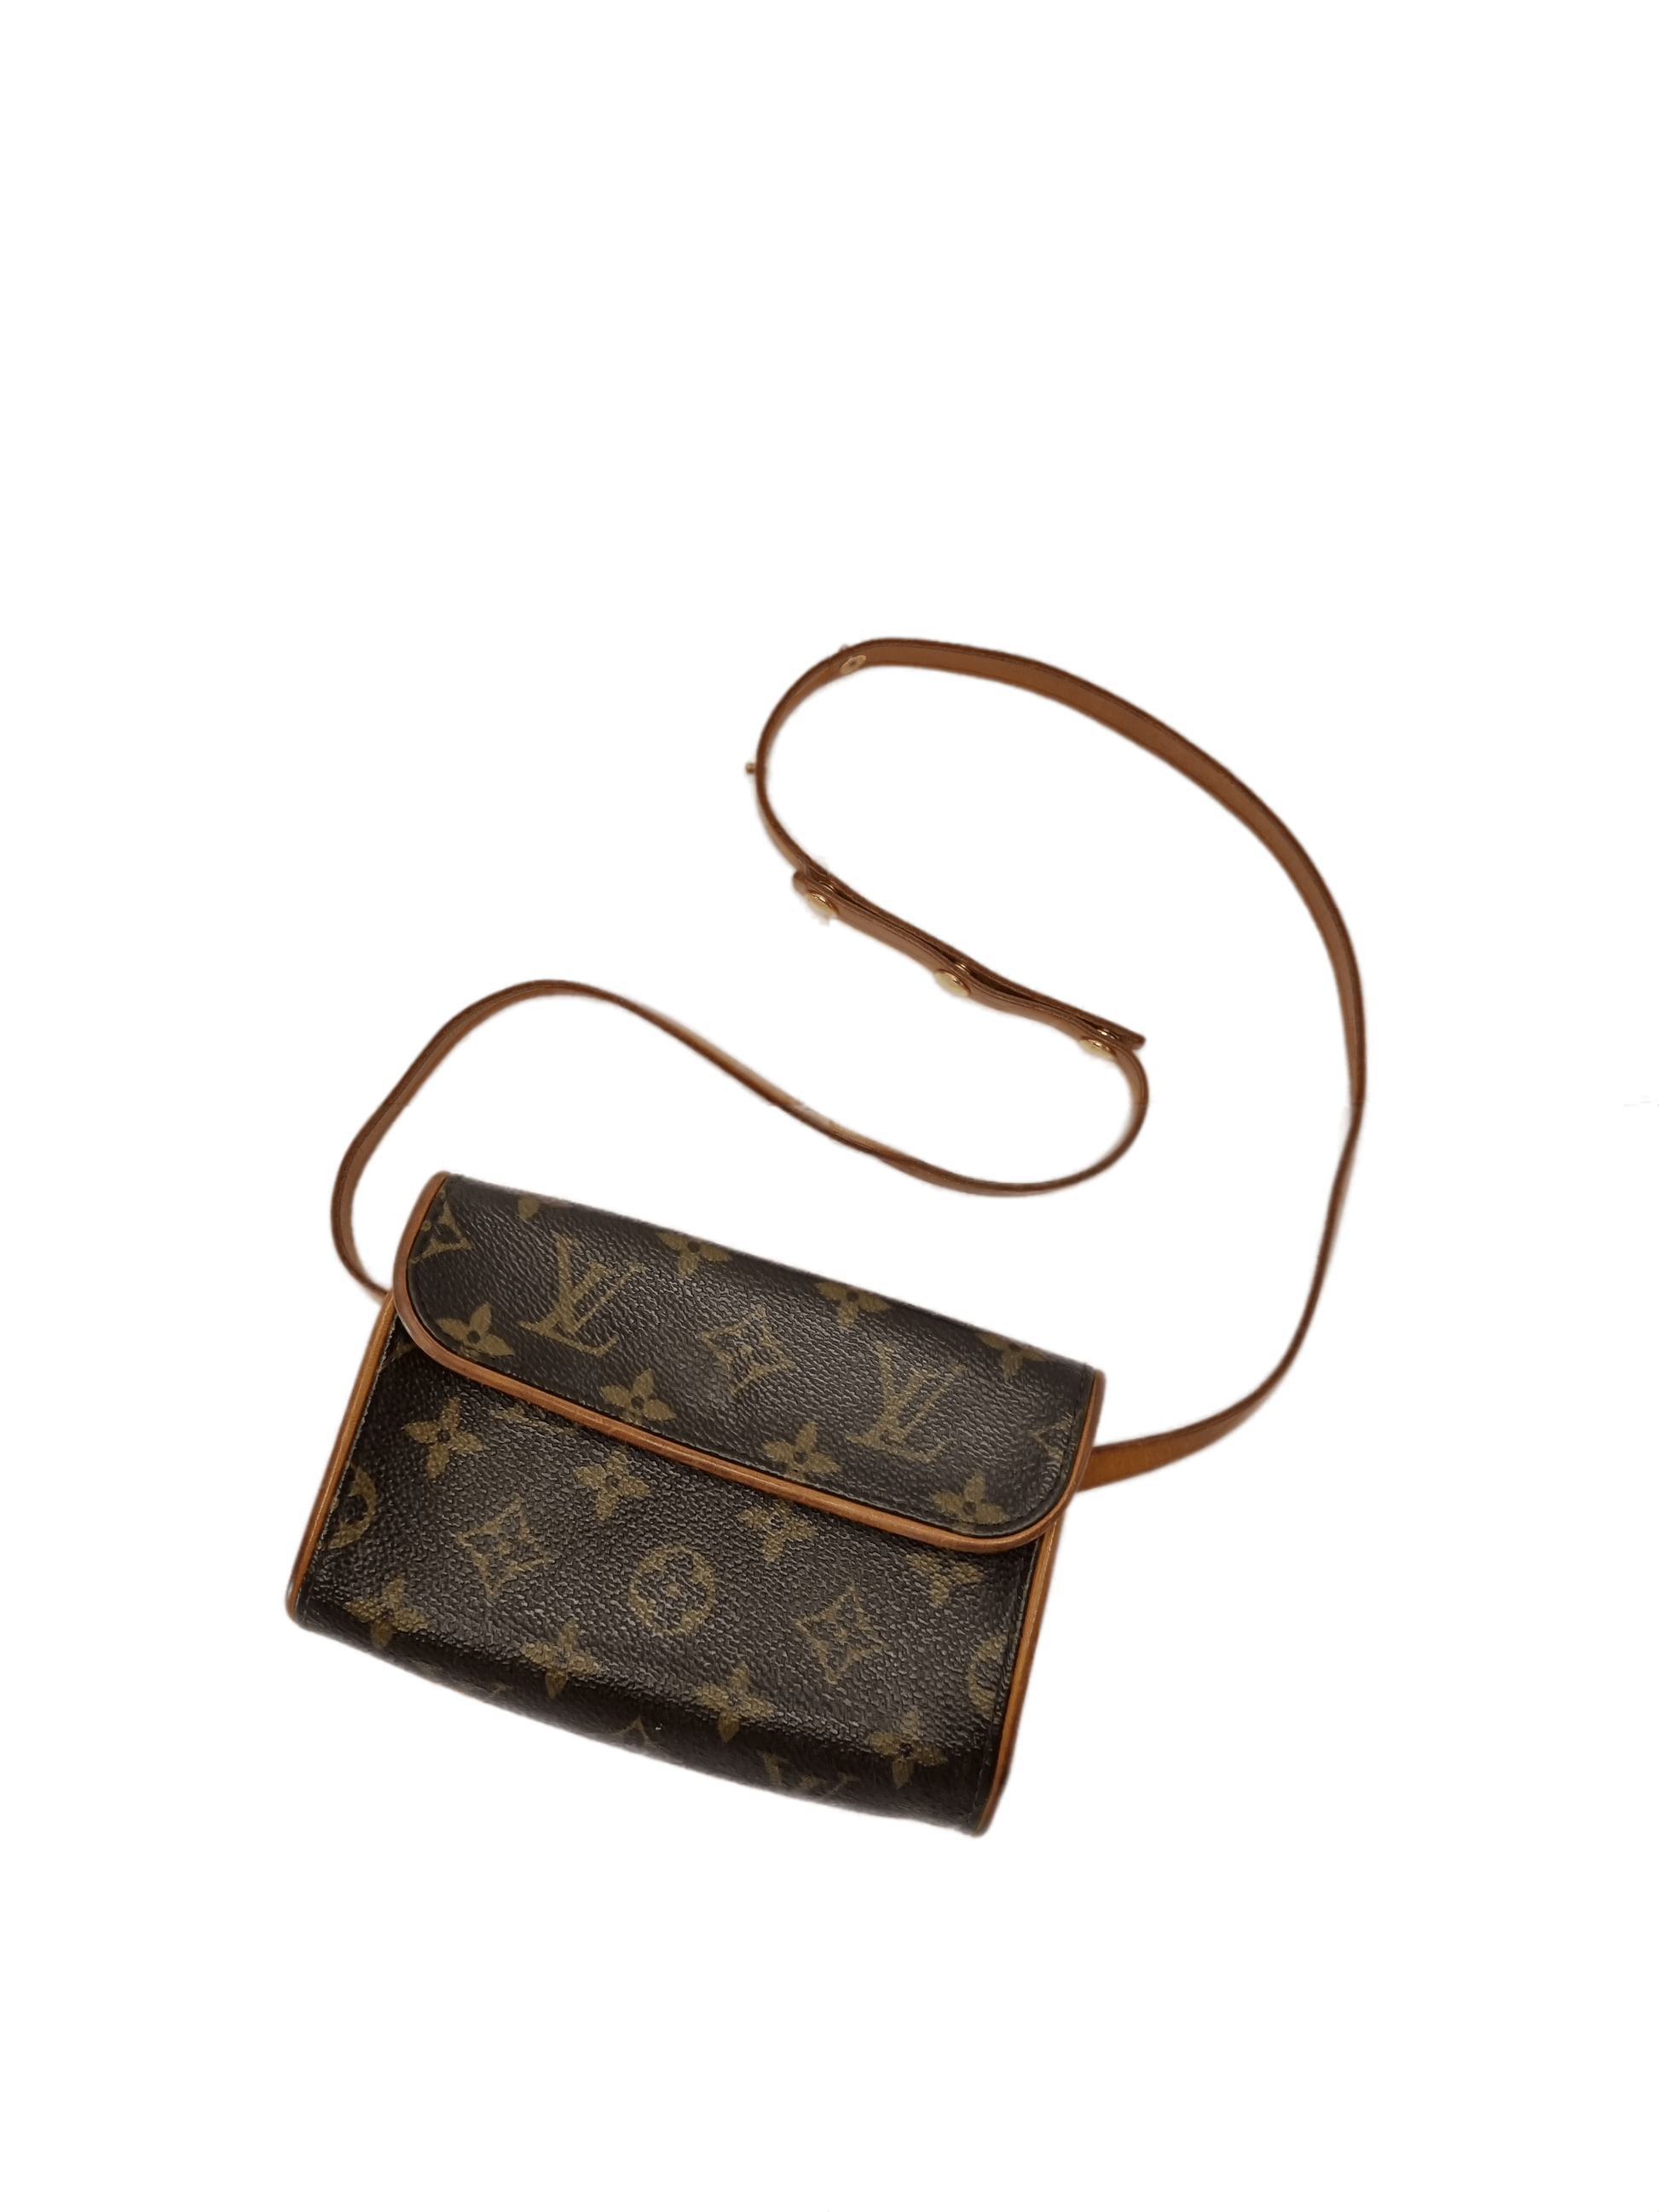 Louis Vuitton belt bag